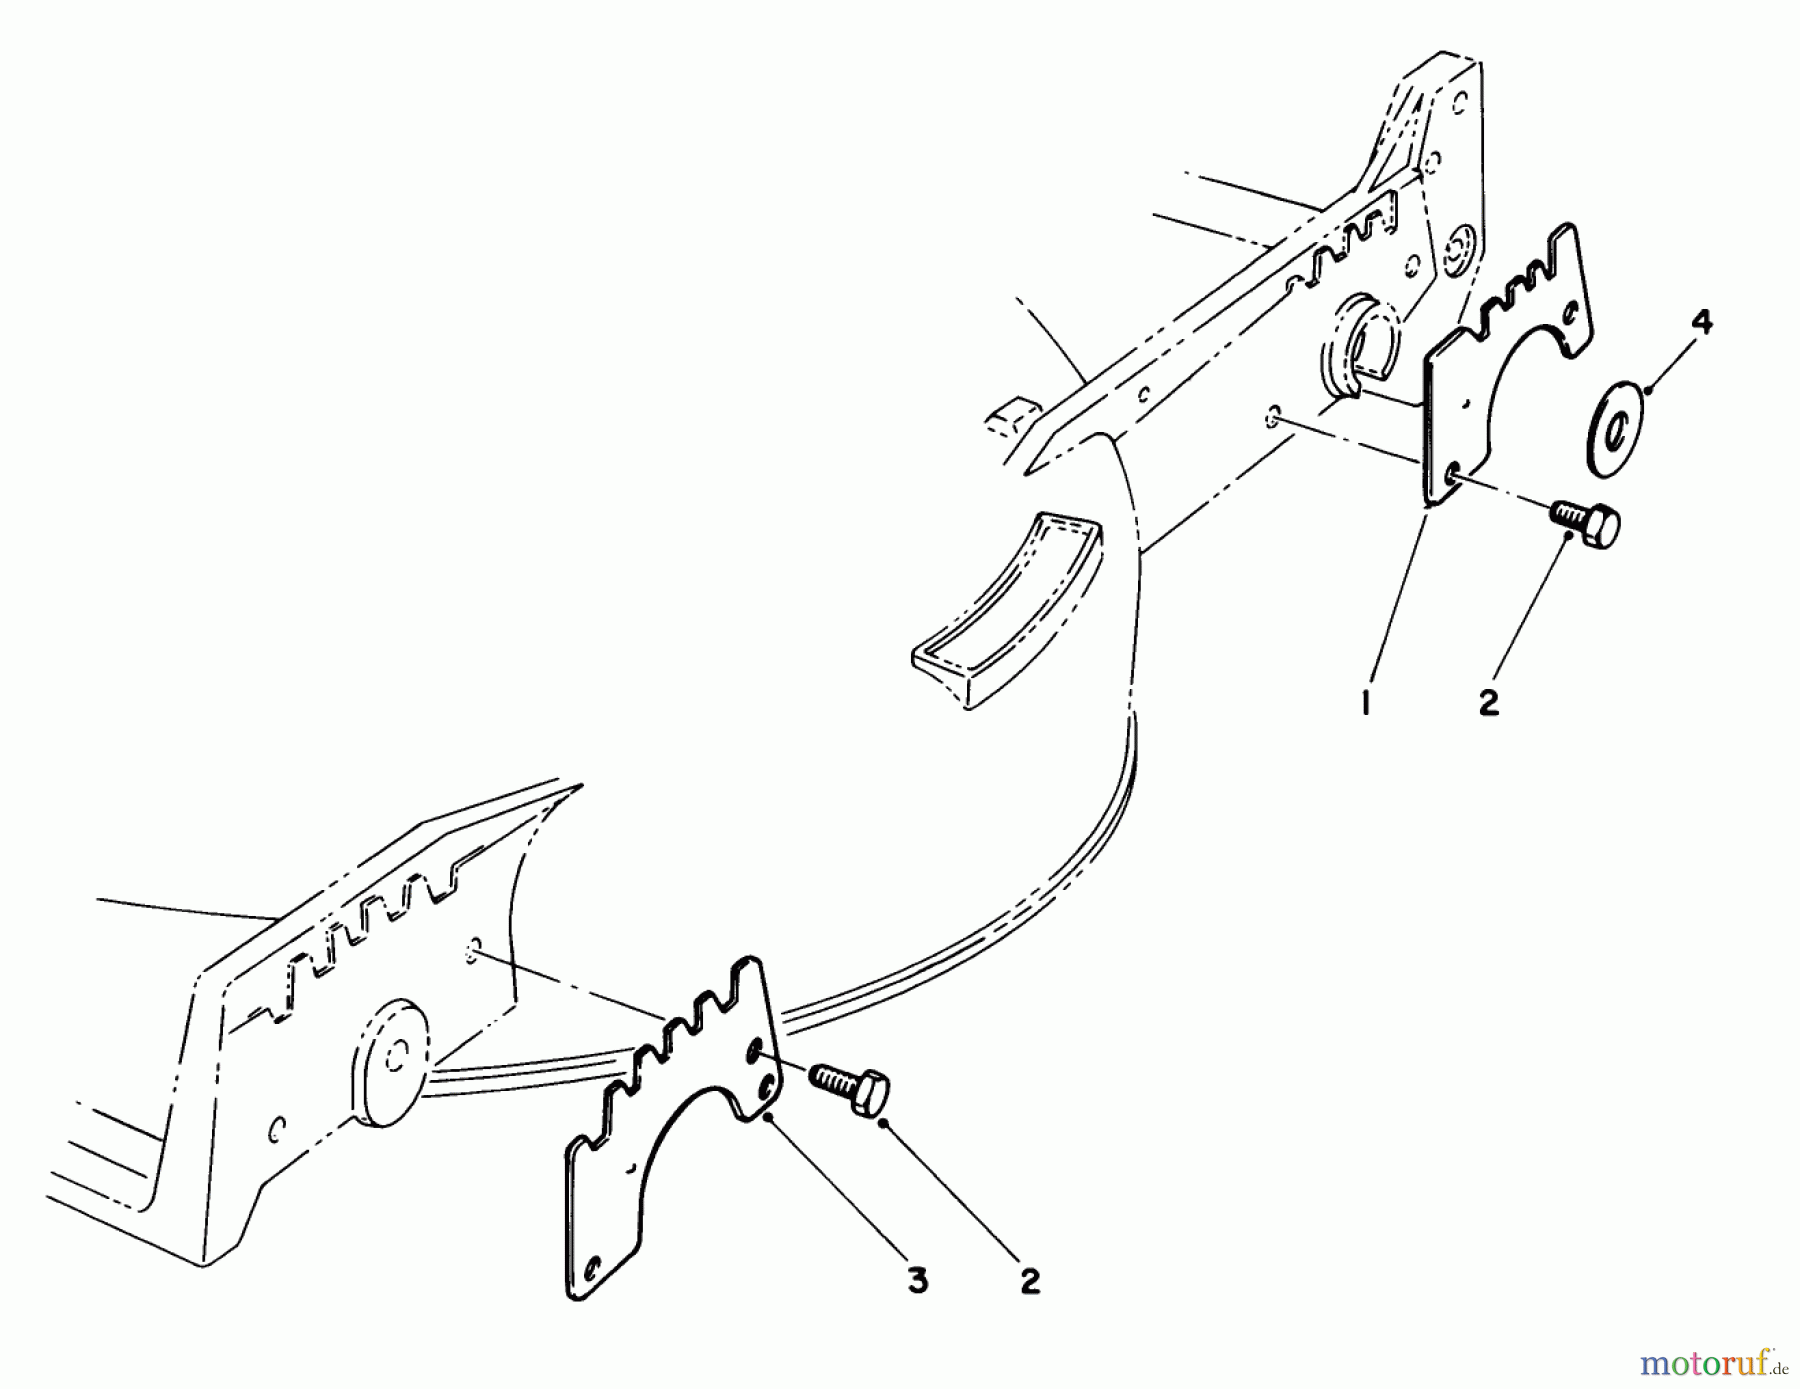  Toro Neu Mowers, Walk-Behind Seite 1 20526C - Toro Lawnmower, 1989 (9000001-9999999) WEAR PLATE KIT NO. 49-4080 (OPTIONAL)